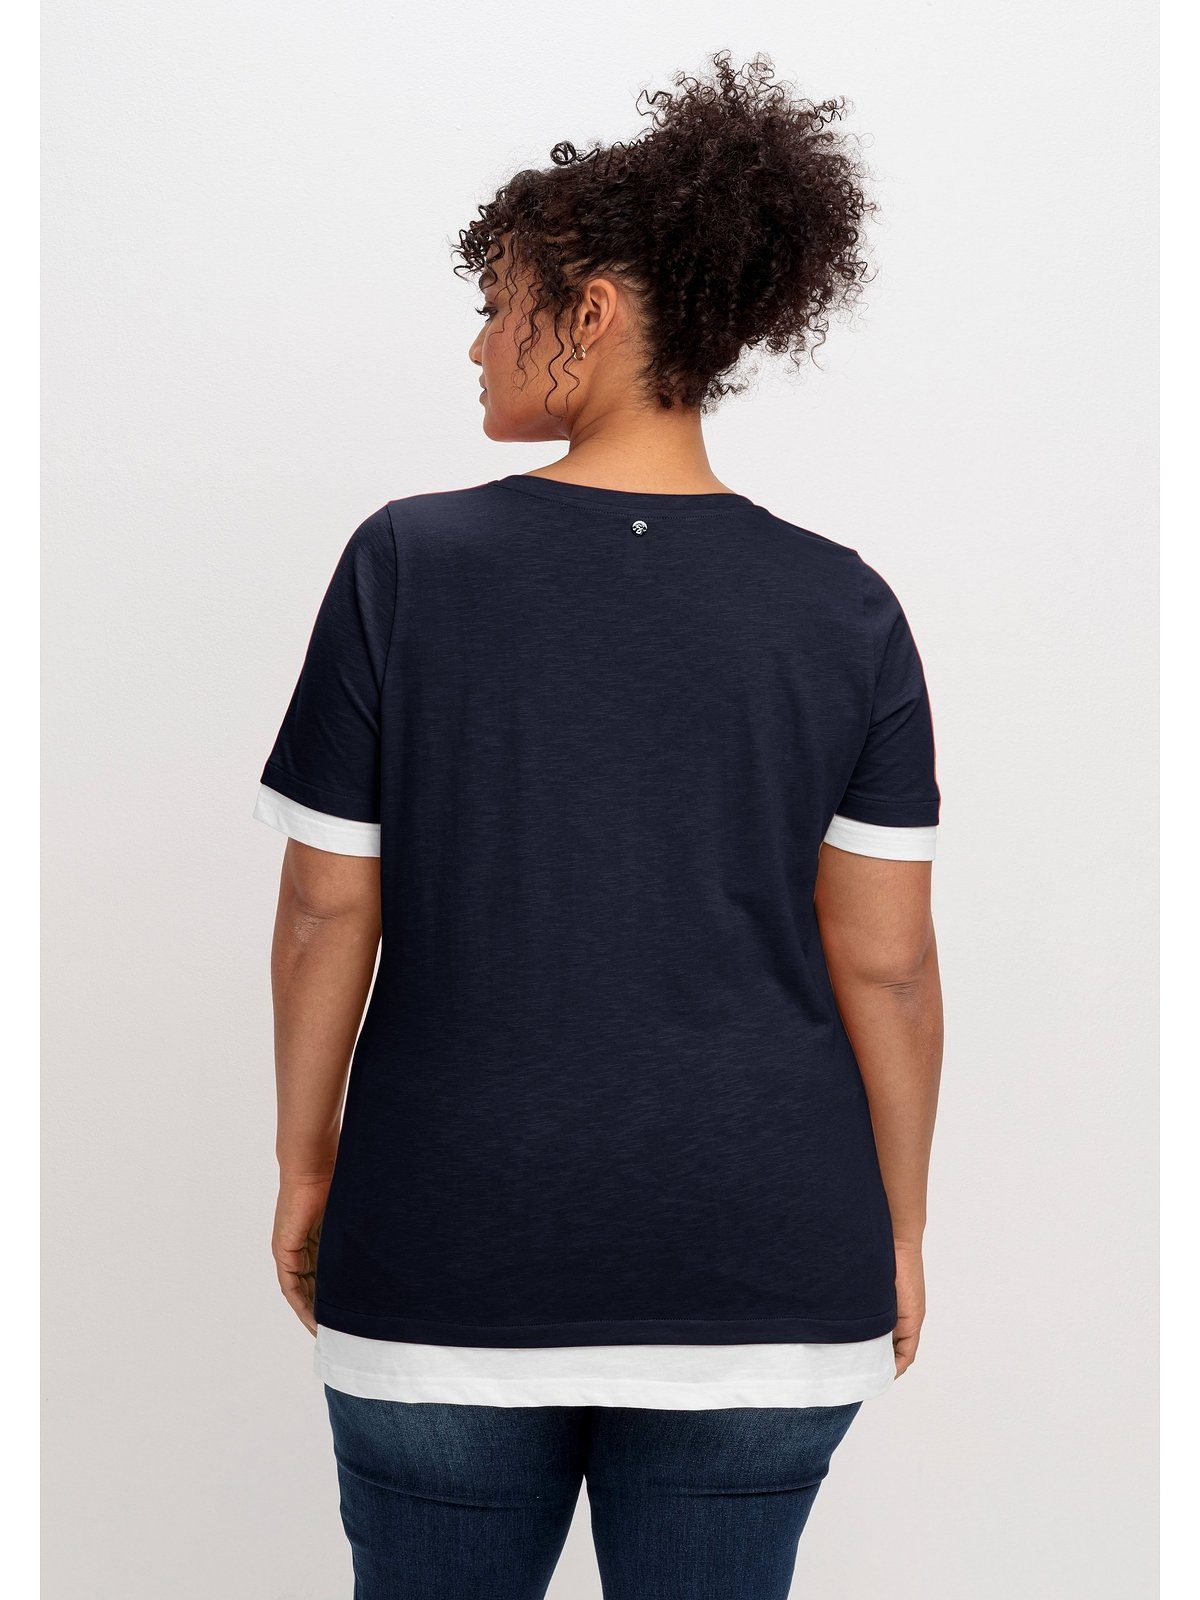 Größen Große V-Ausschnitt 2-in-1-Shirt mit in Sheego tiefblau-weiß 2-in-1-Optik,